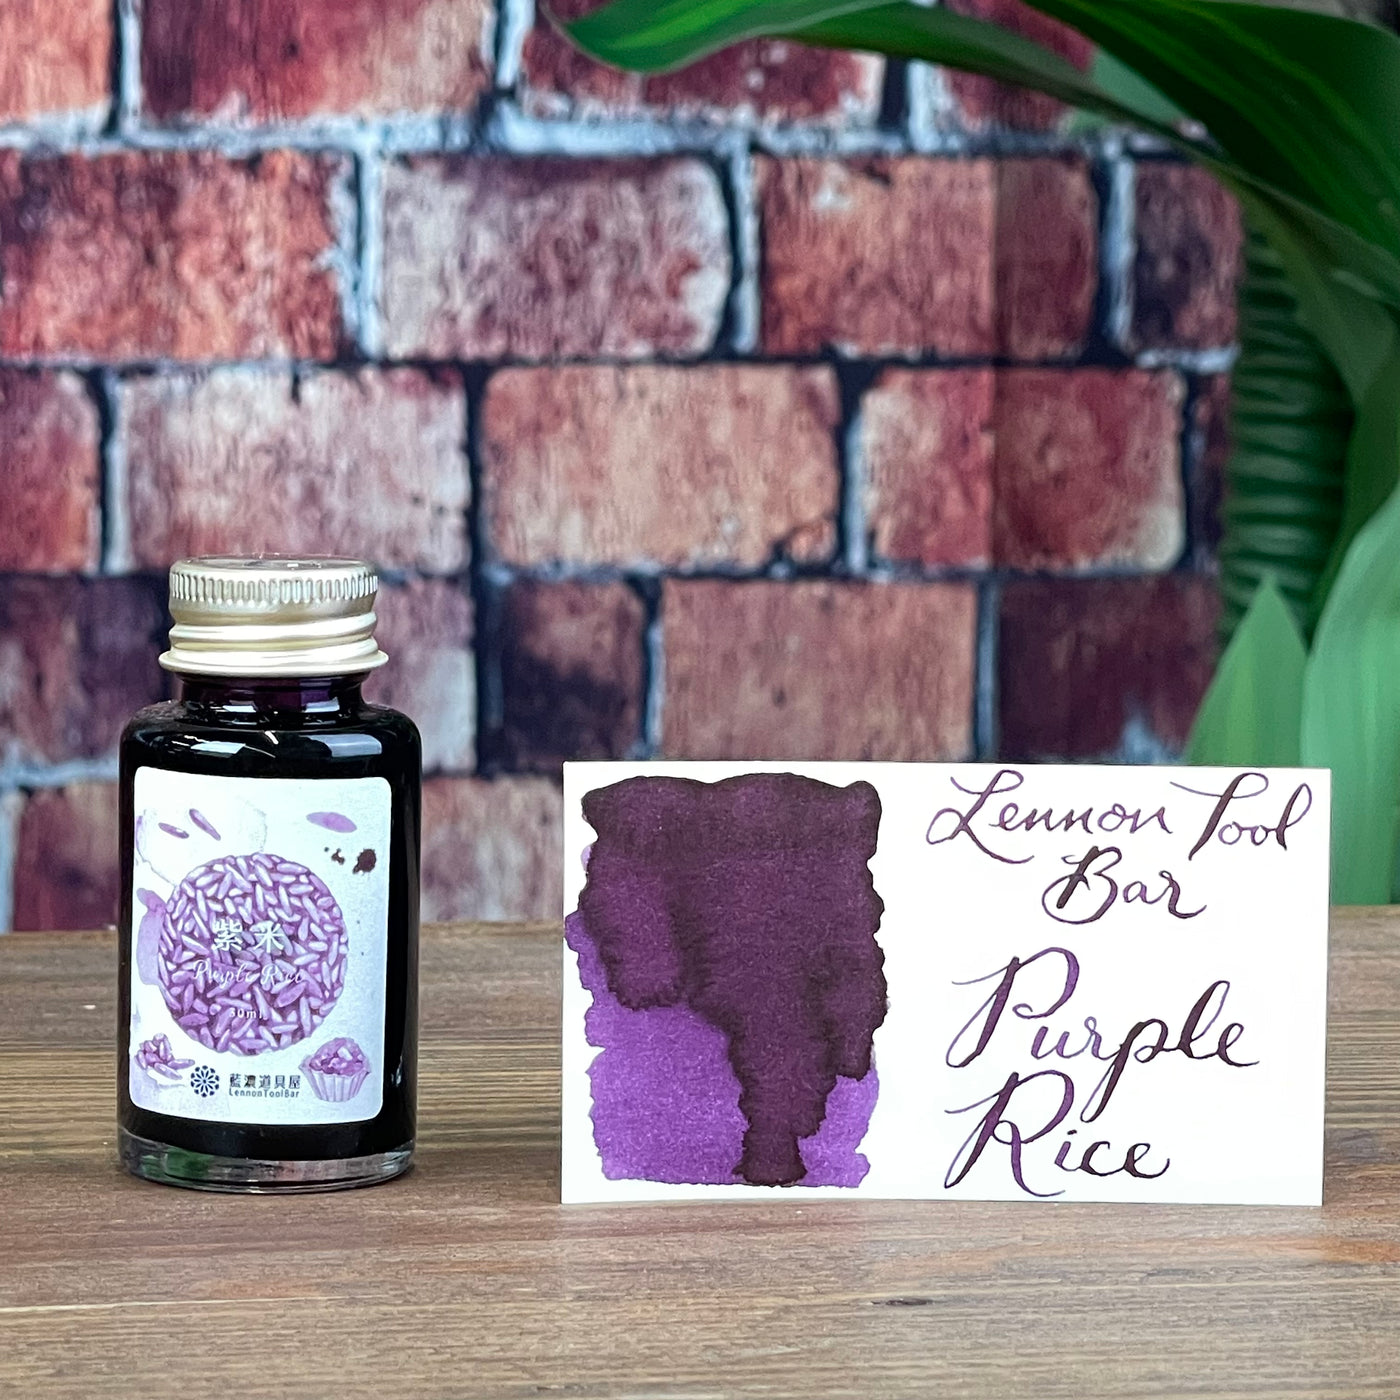 Lennon Tool Bar Purple Rice - 30ml Bottled Ink